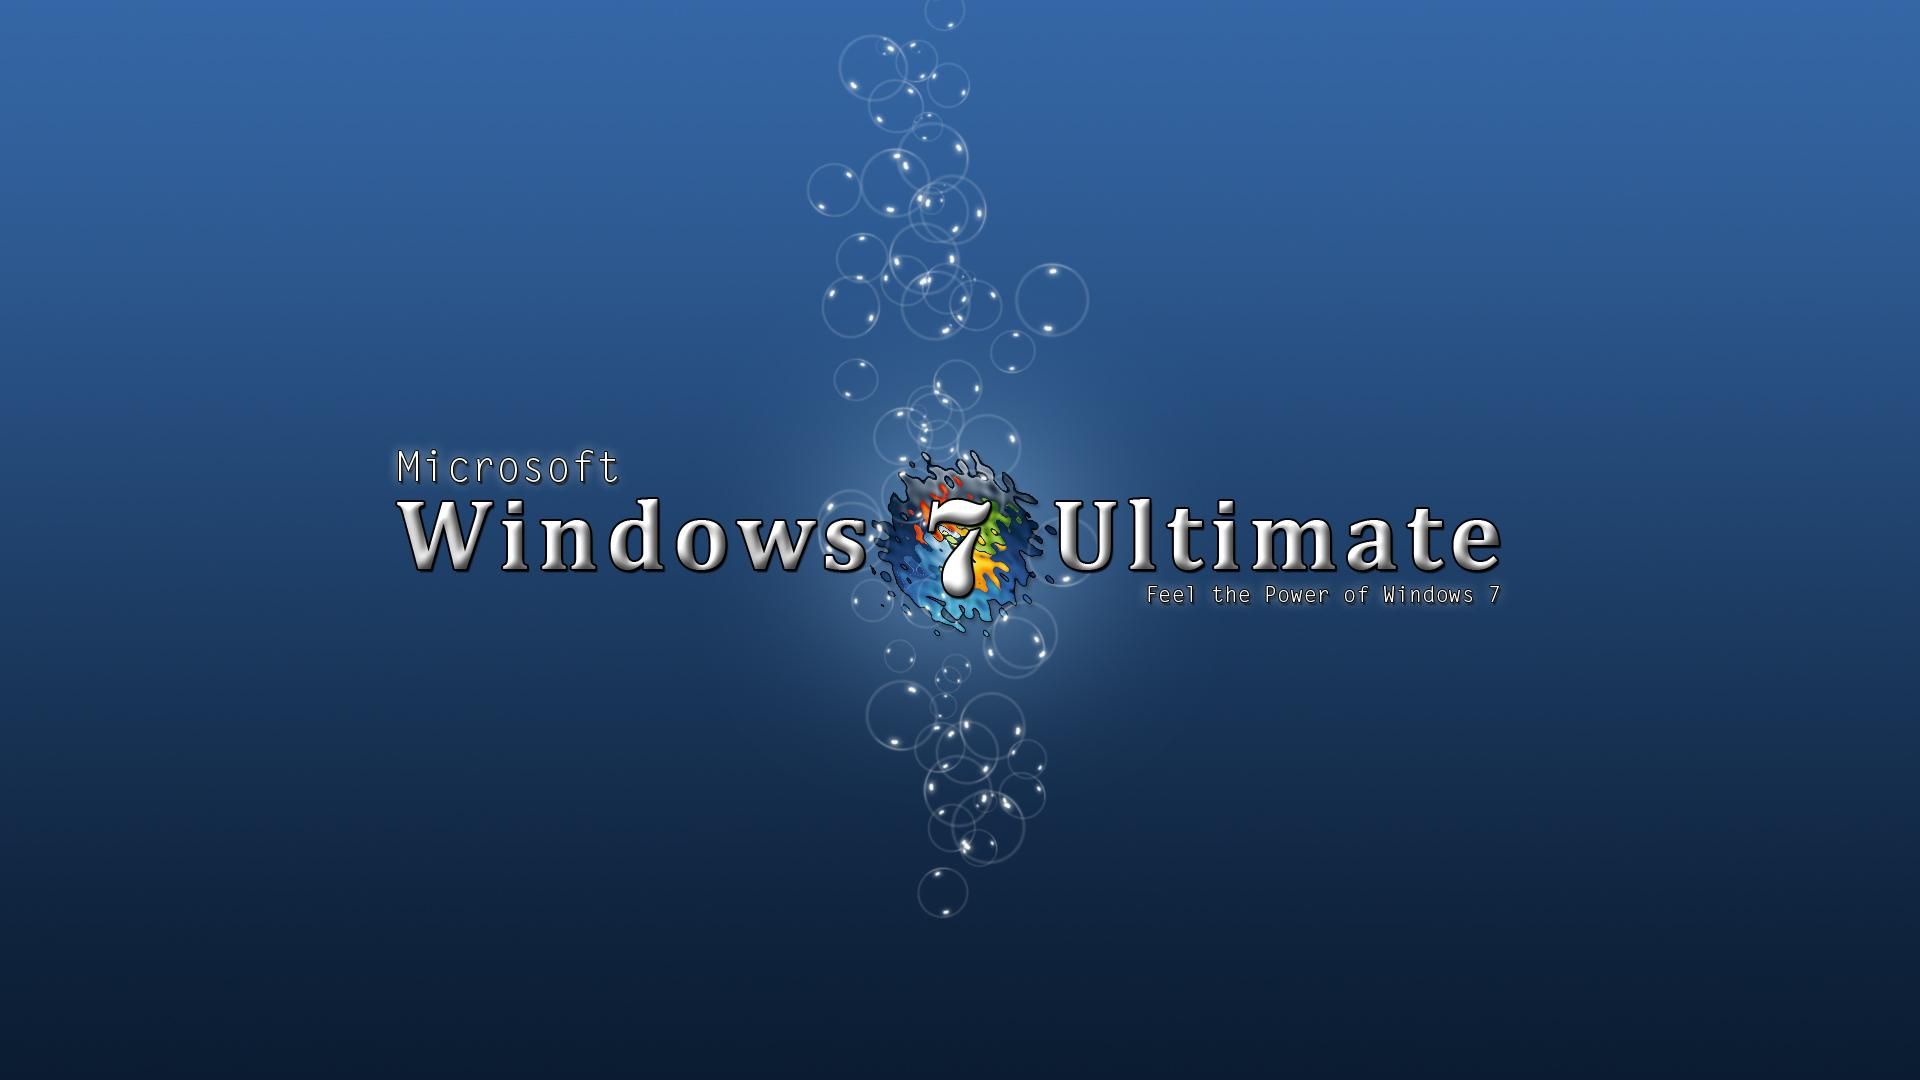 Blue Windows 7 Ultimate HD desktop wallpaper Widescreen High resolution